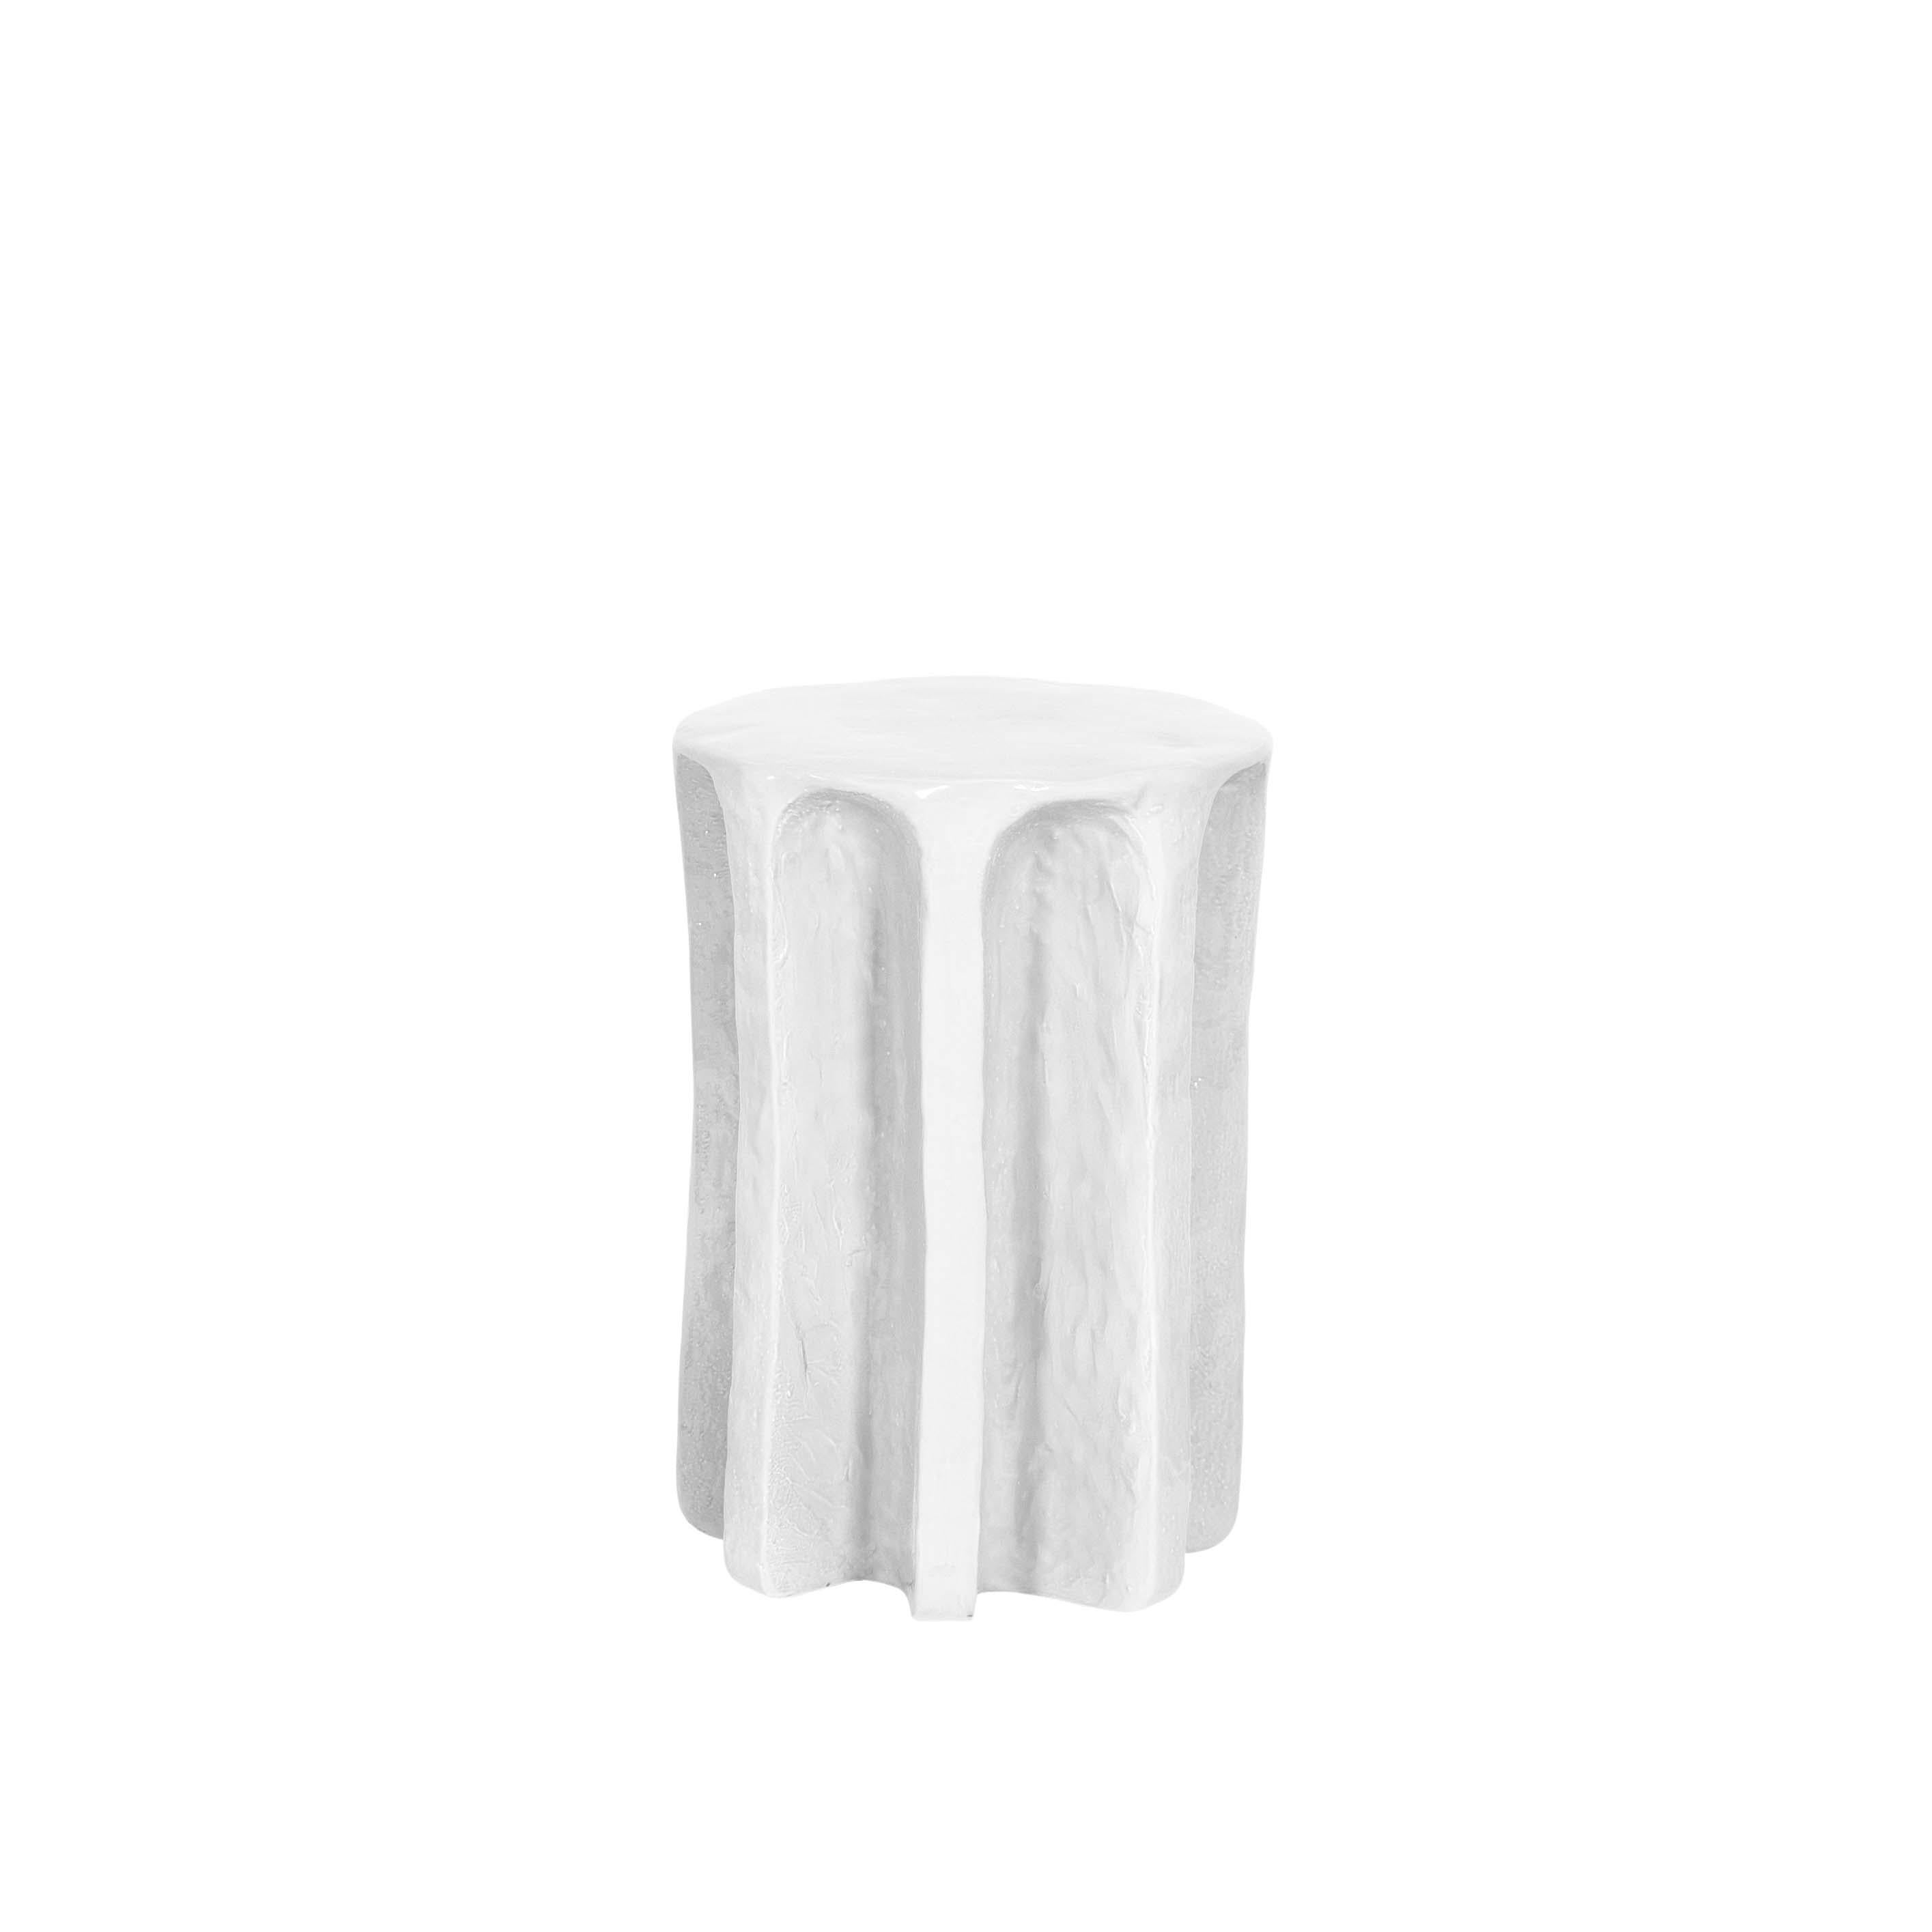 Table d'appoint haute blanche Whiting par Pulpo
Dimensions : D 39 x H 57 cm
Matériaux : céramique

Également disponible en différentes couleurs.

Chouchou porte les contours d'une colonne antique - ce qui, connaissant le designer Lorenzo Zanovello,